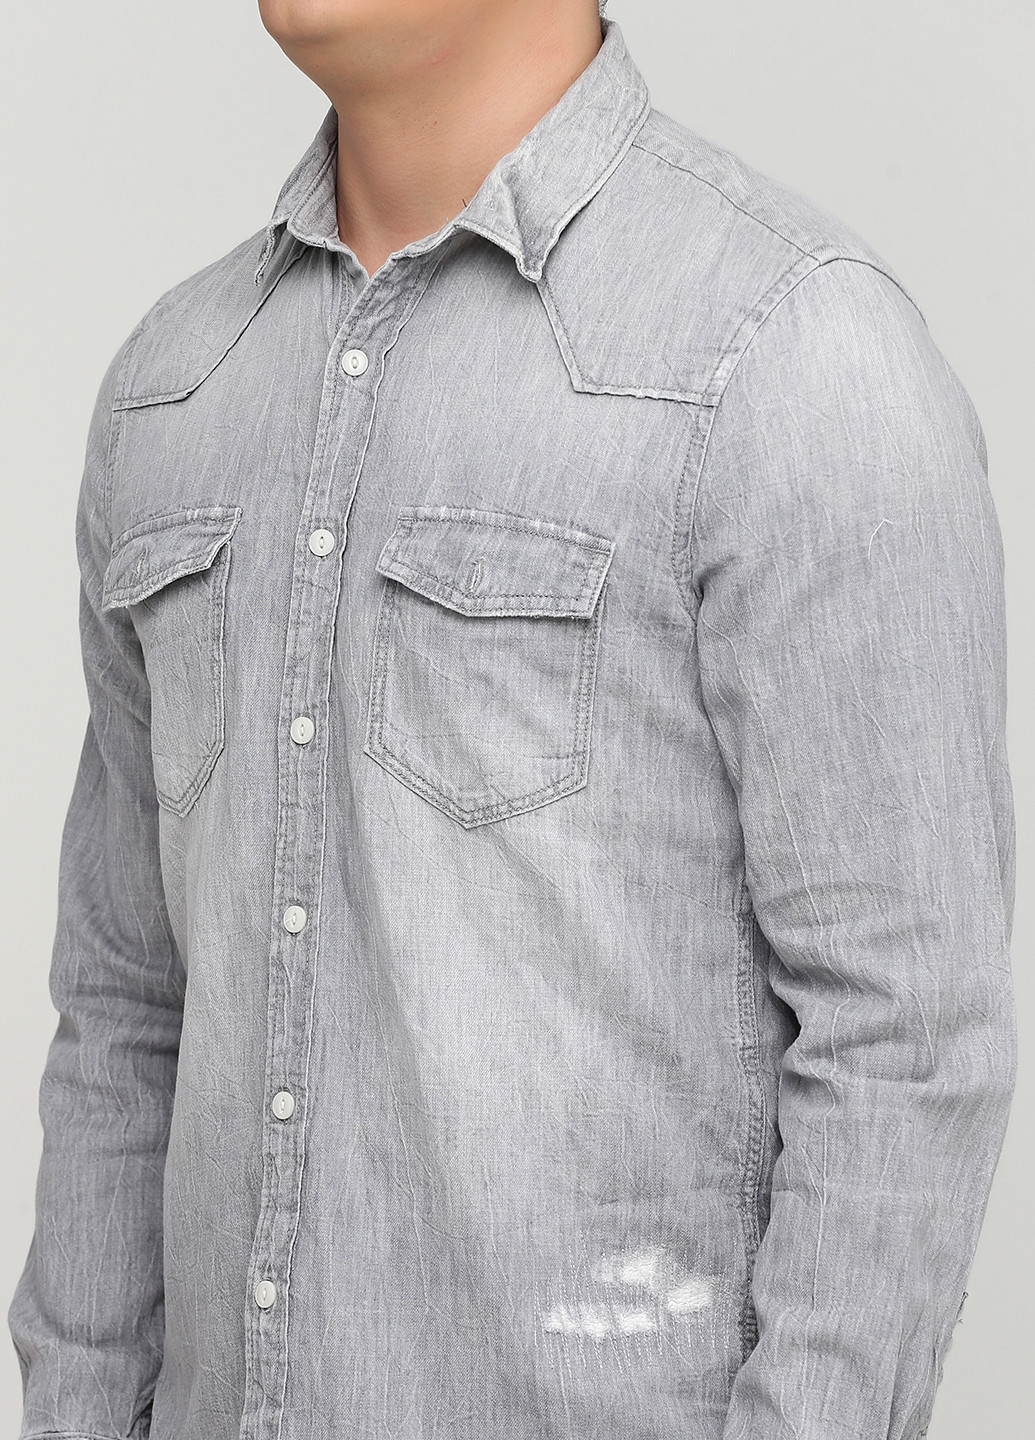 Светло-серая джинсовая рубашка варенка H&M